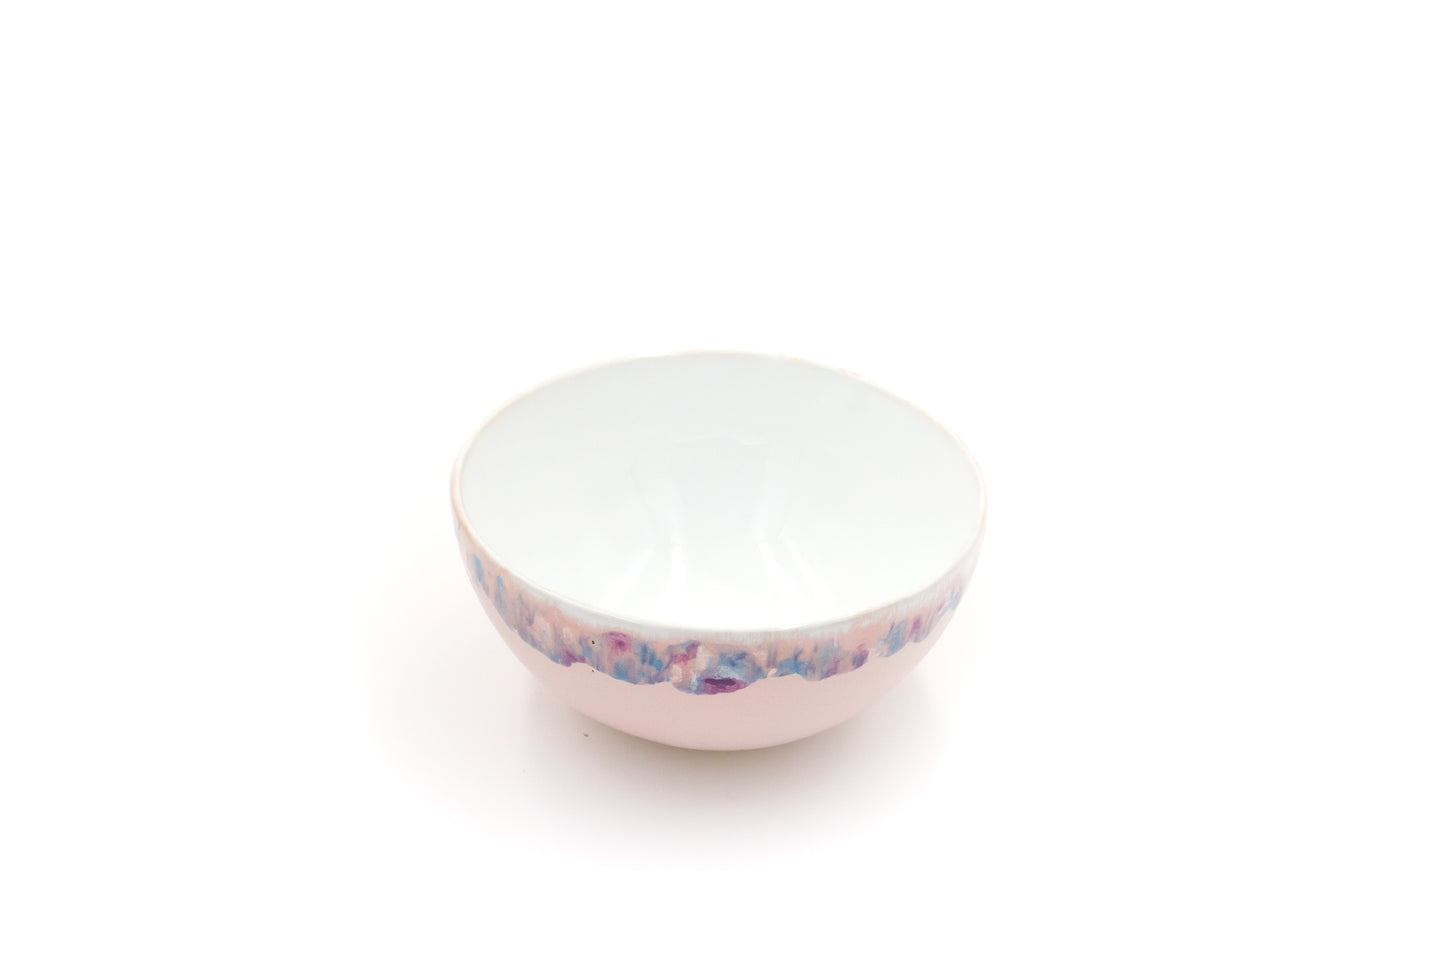 Miseczka ceramiczna w kolorze biało-różowym